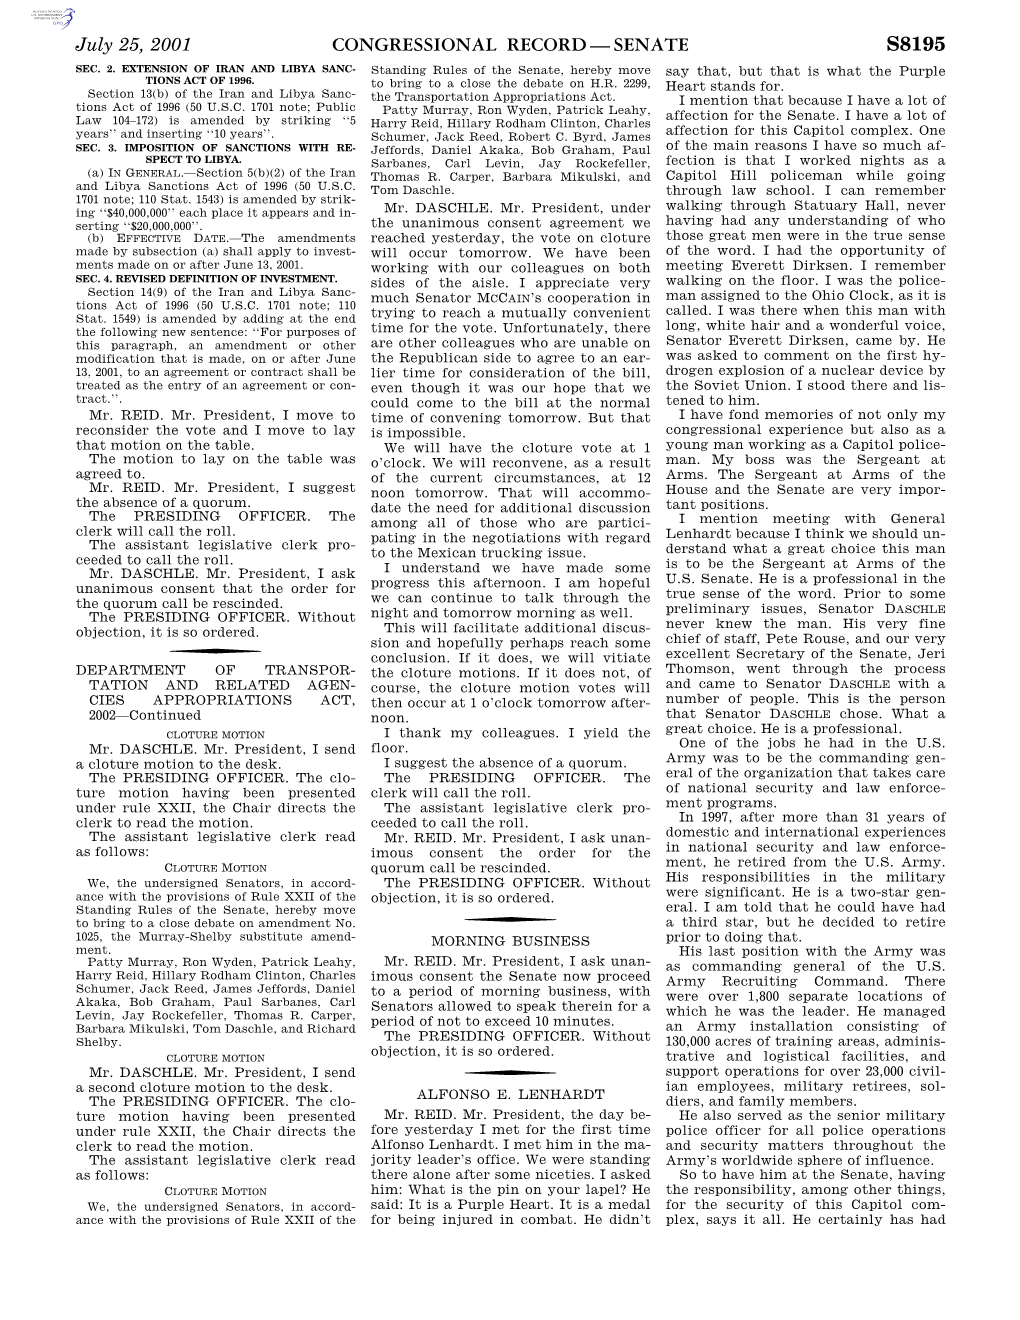 Congressional Record—Senate S8195